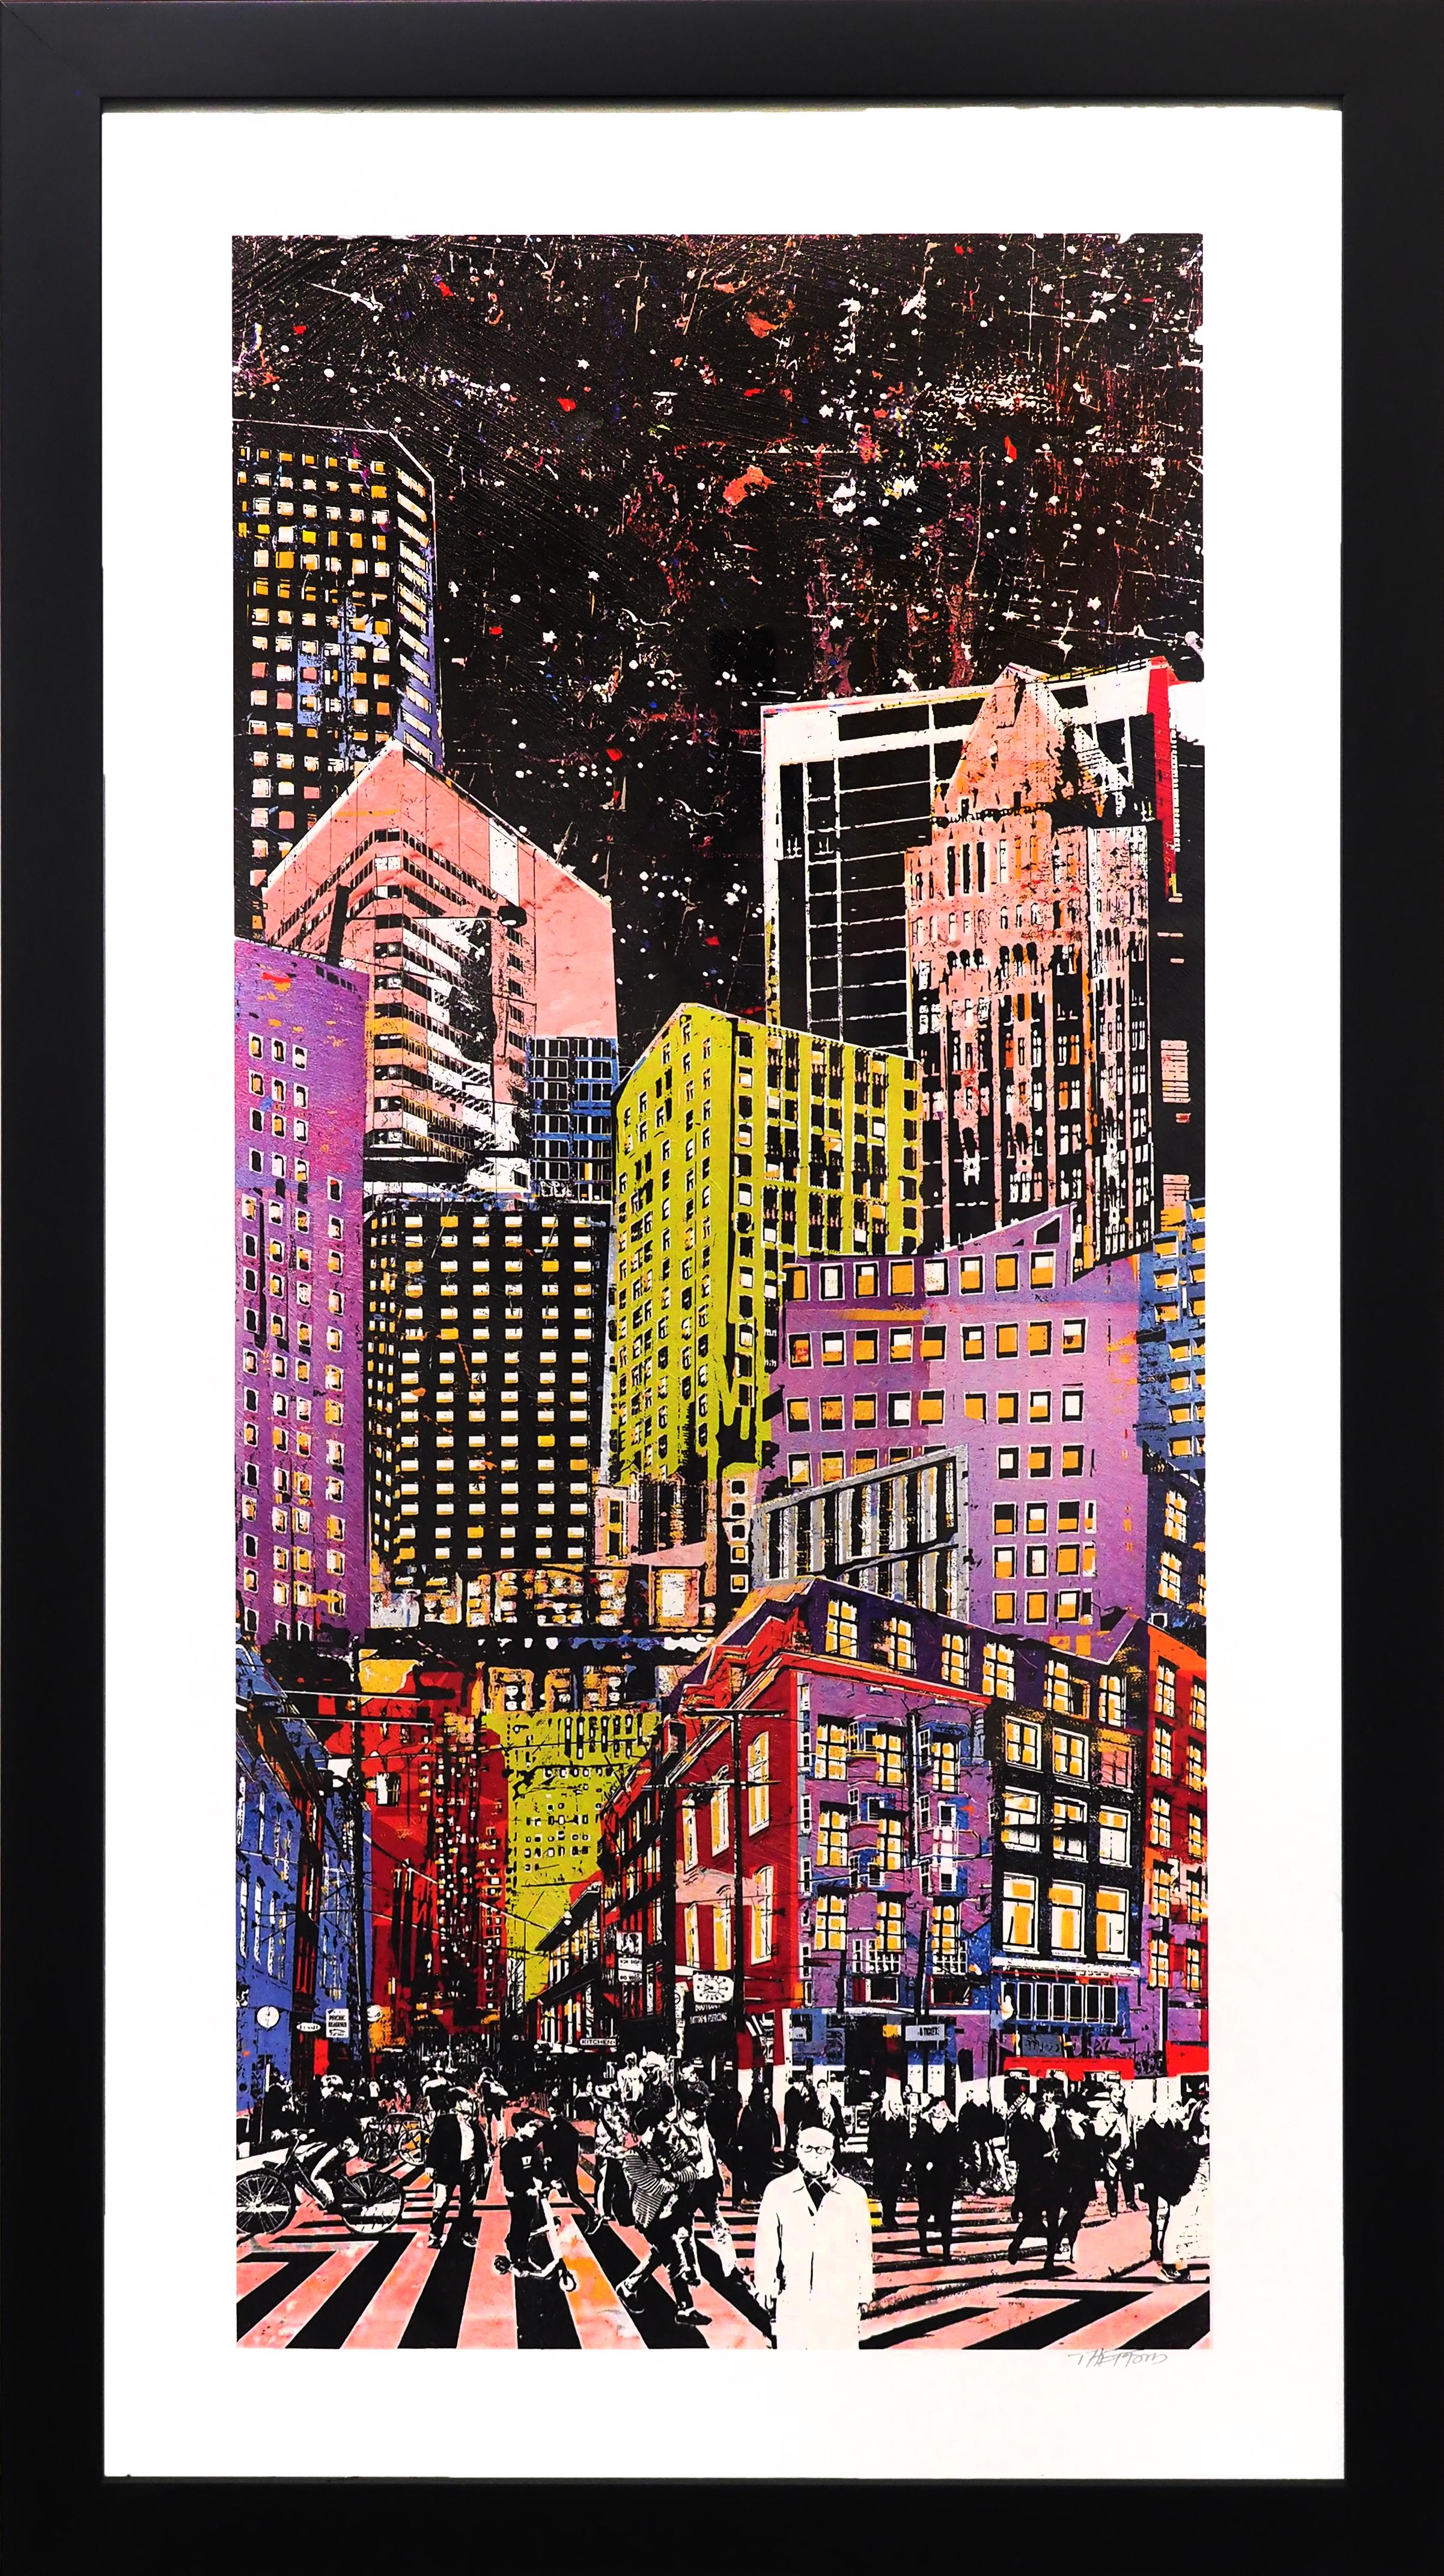 Big City at Night II - Mixed Media Art by Daryl Thetford 